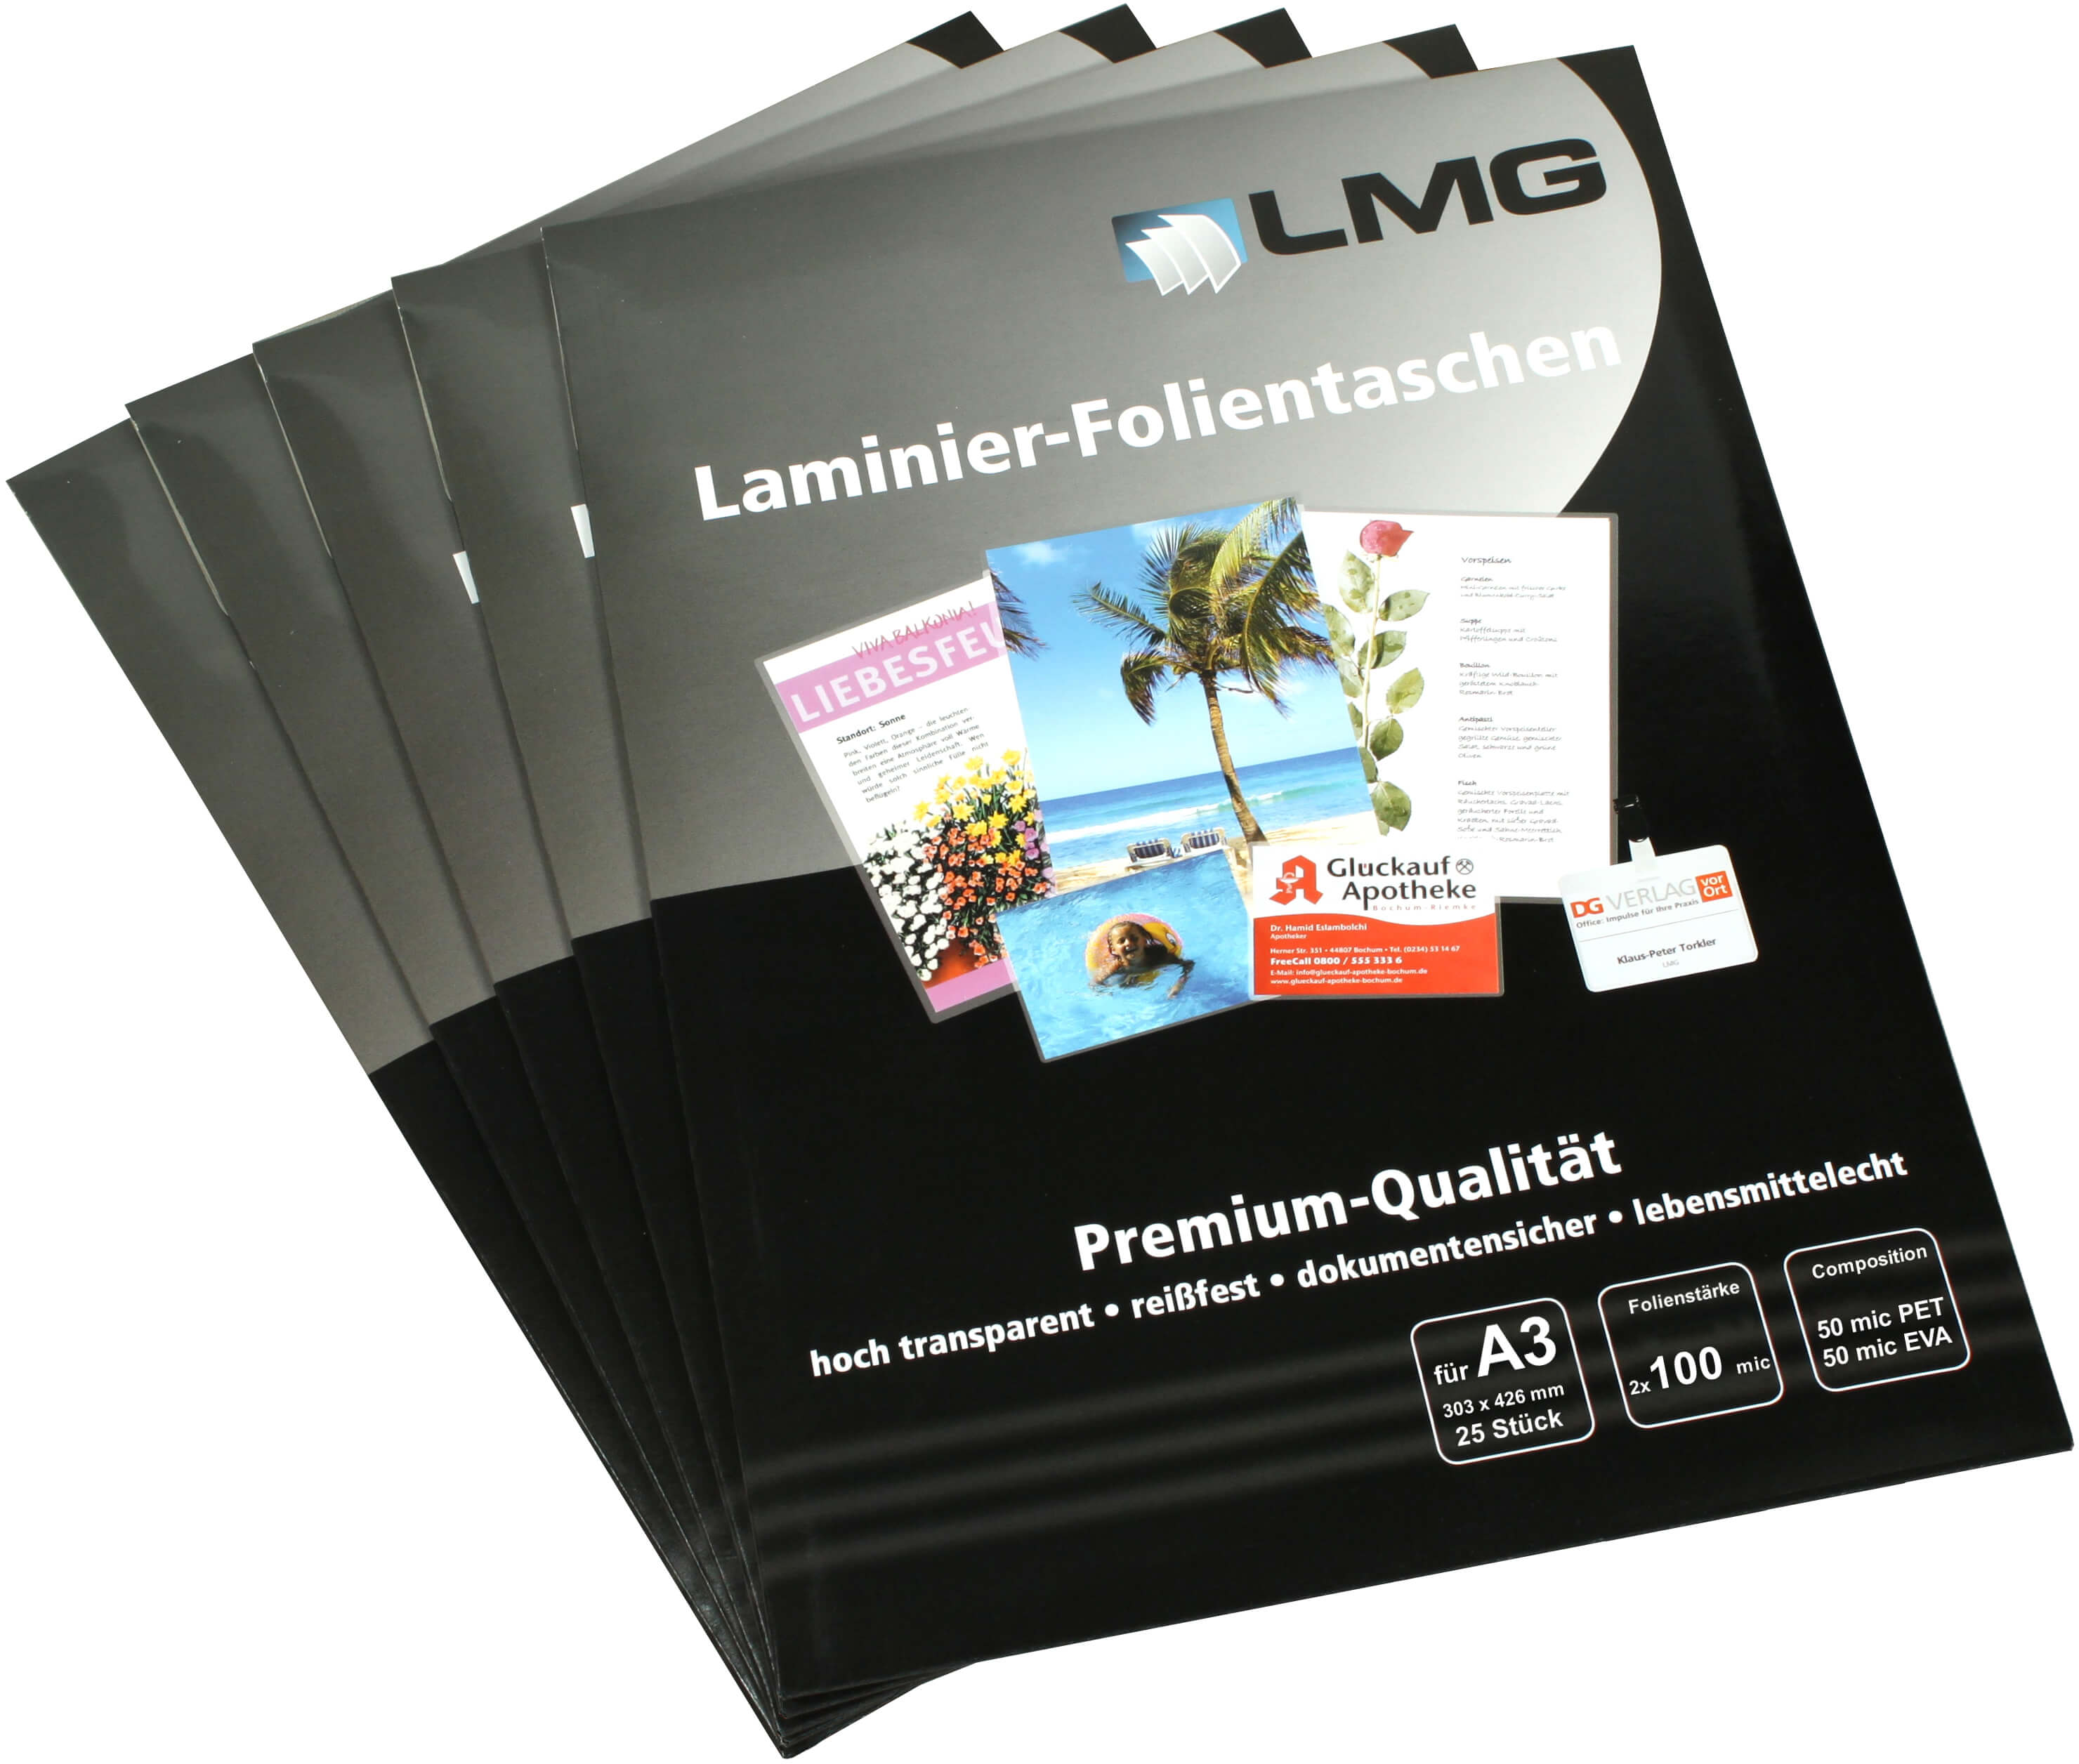 Laminierfolien A3 (303 x 426 mm), 2x 100 mic, glänzend | Bestnr. LMGA3-100-25